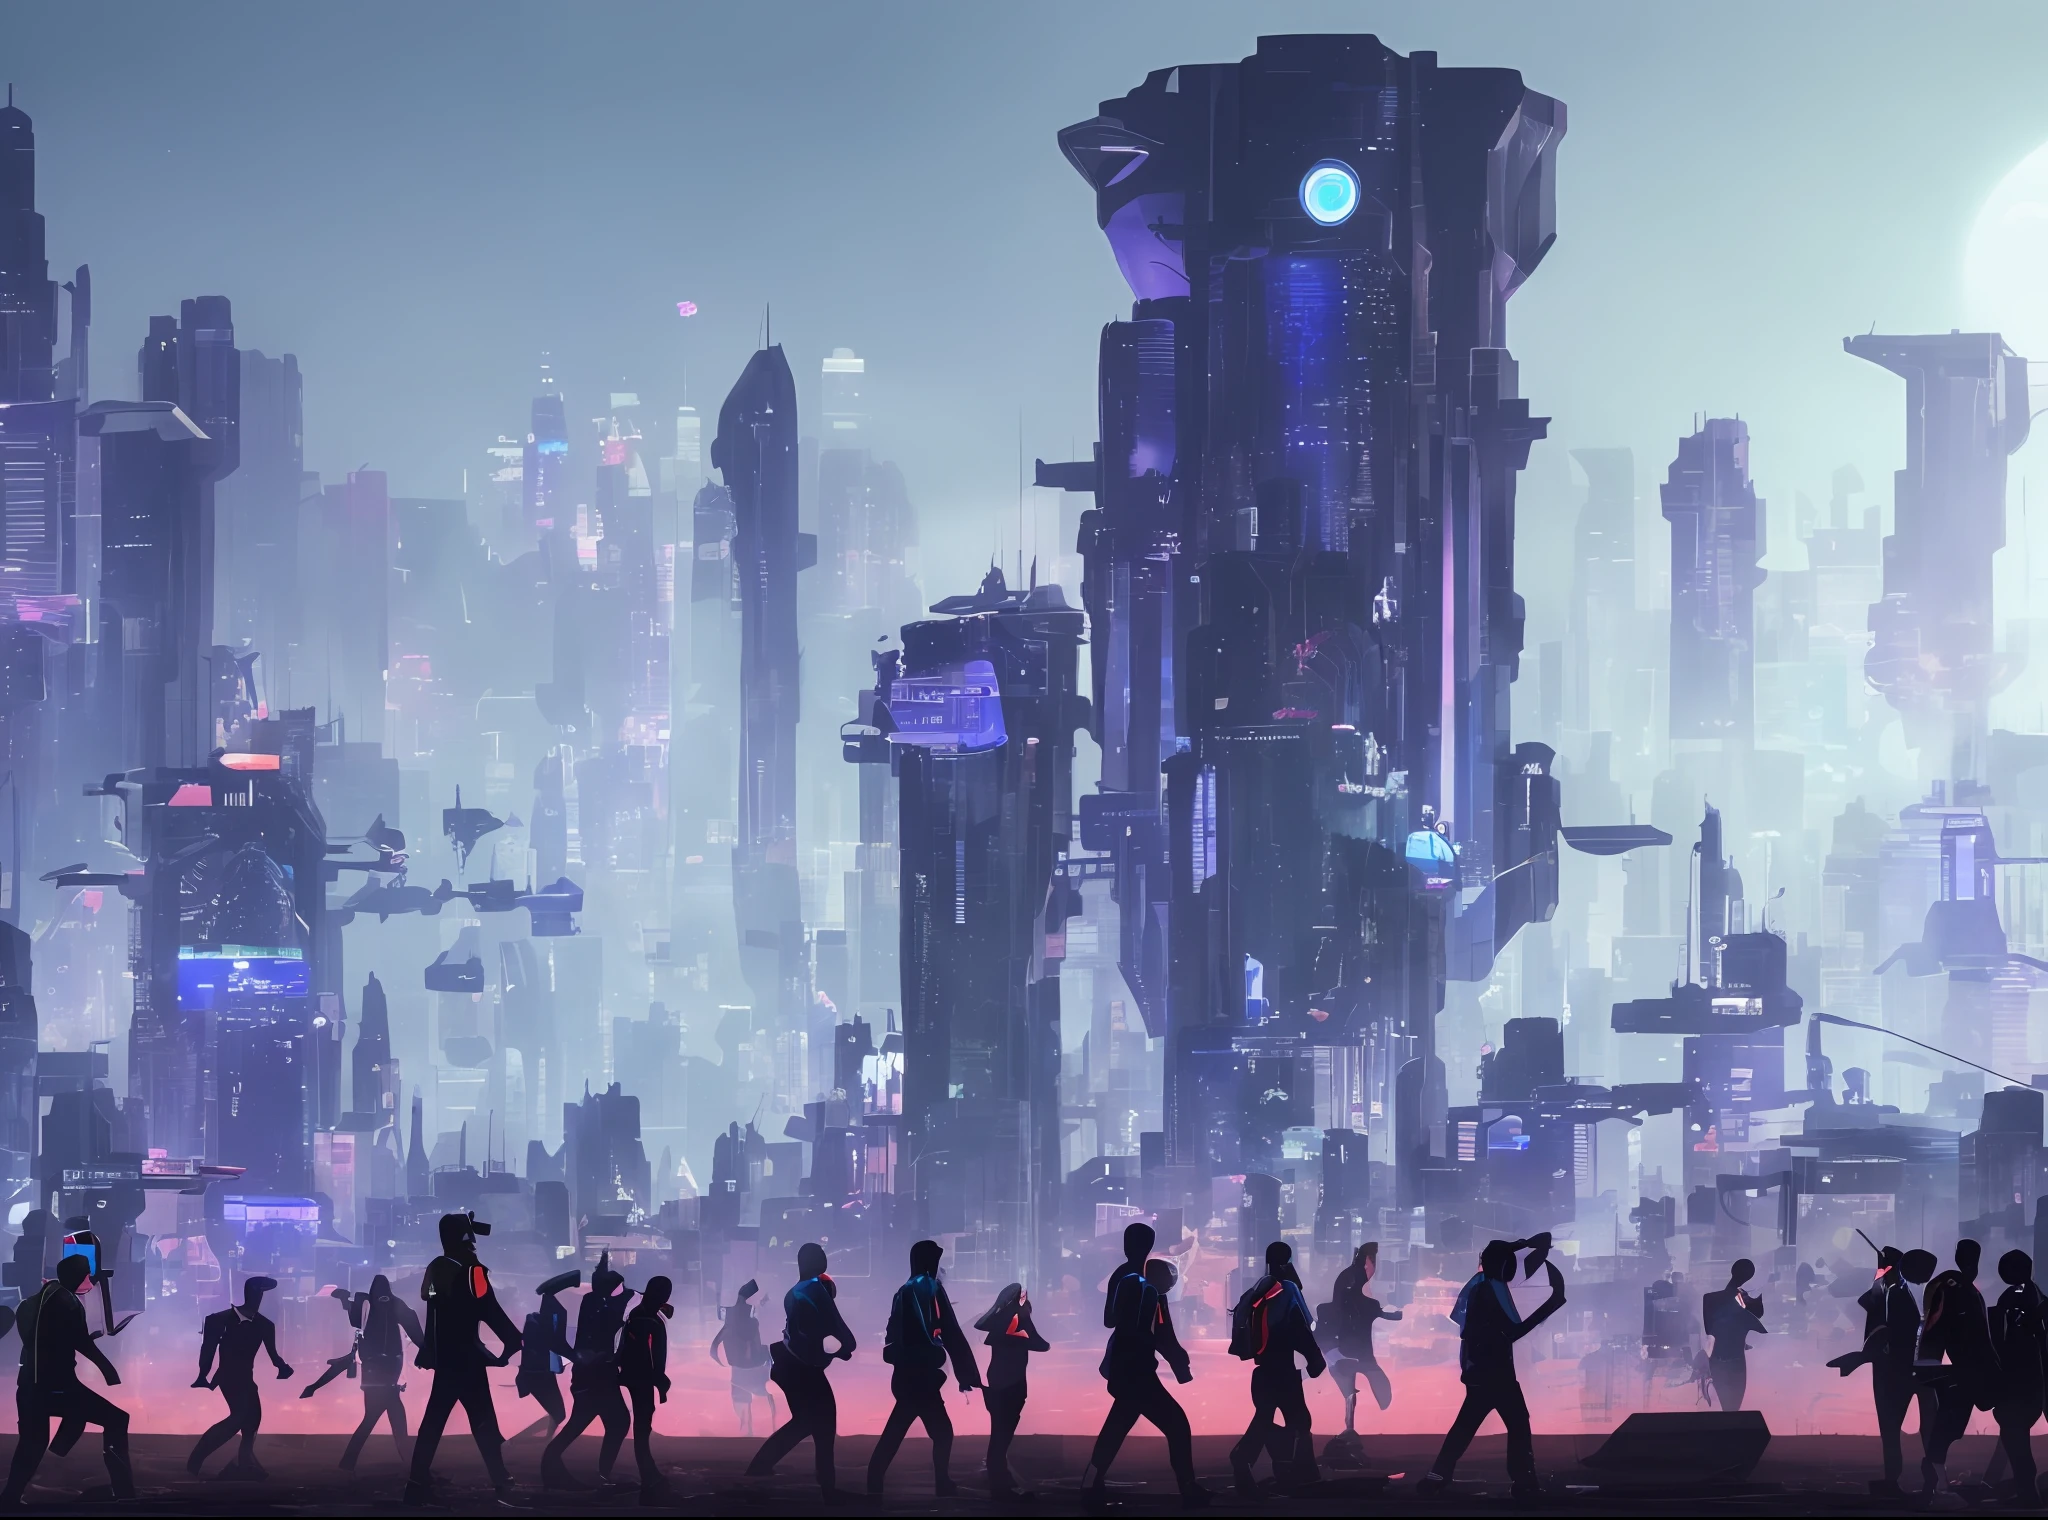 العديد من الكائنات الفضائية بأجساد تشبه البشر, مسيرة في المدينة السيبرانية المستقبلية